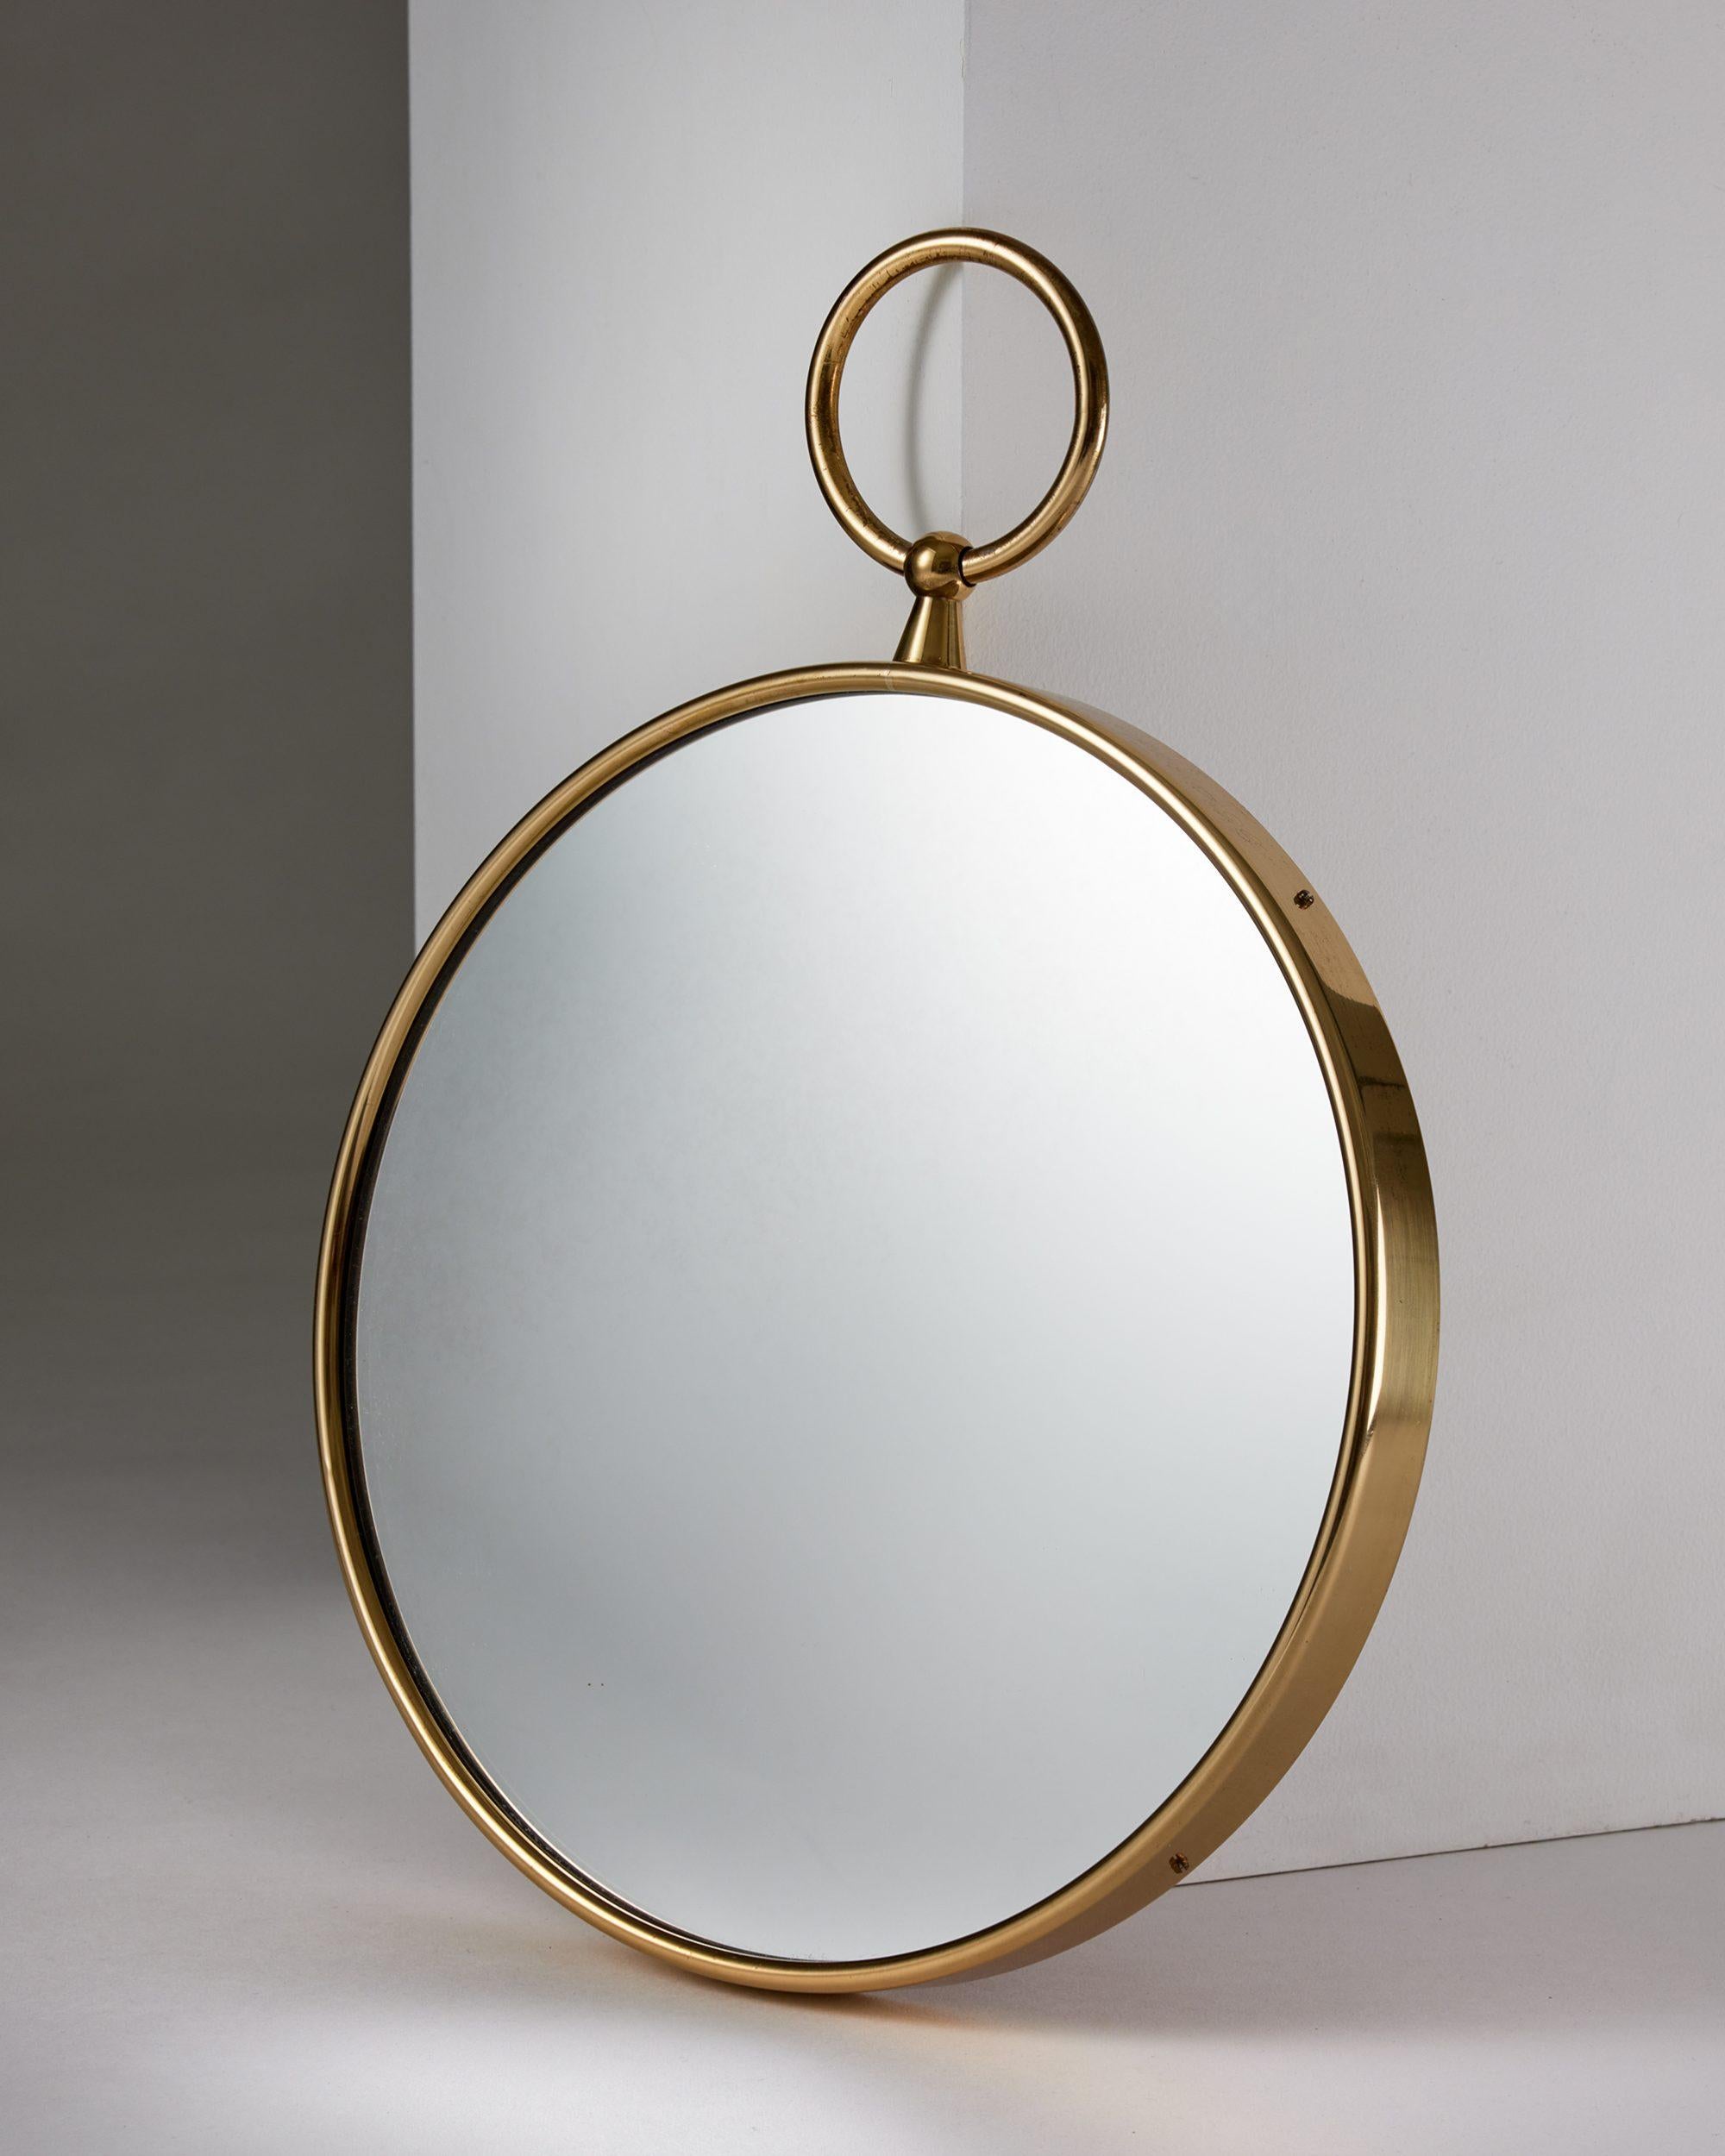 Miroir rond conçu par Piero Fornasetti pour Svenskt Tenn,
Suède, années 1980.

Laiton et verre miroir.